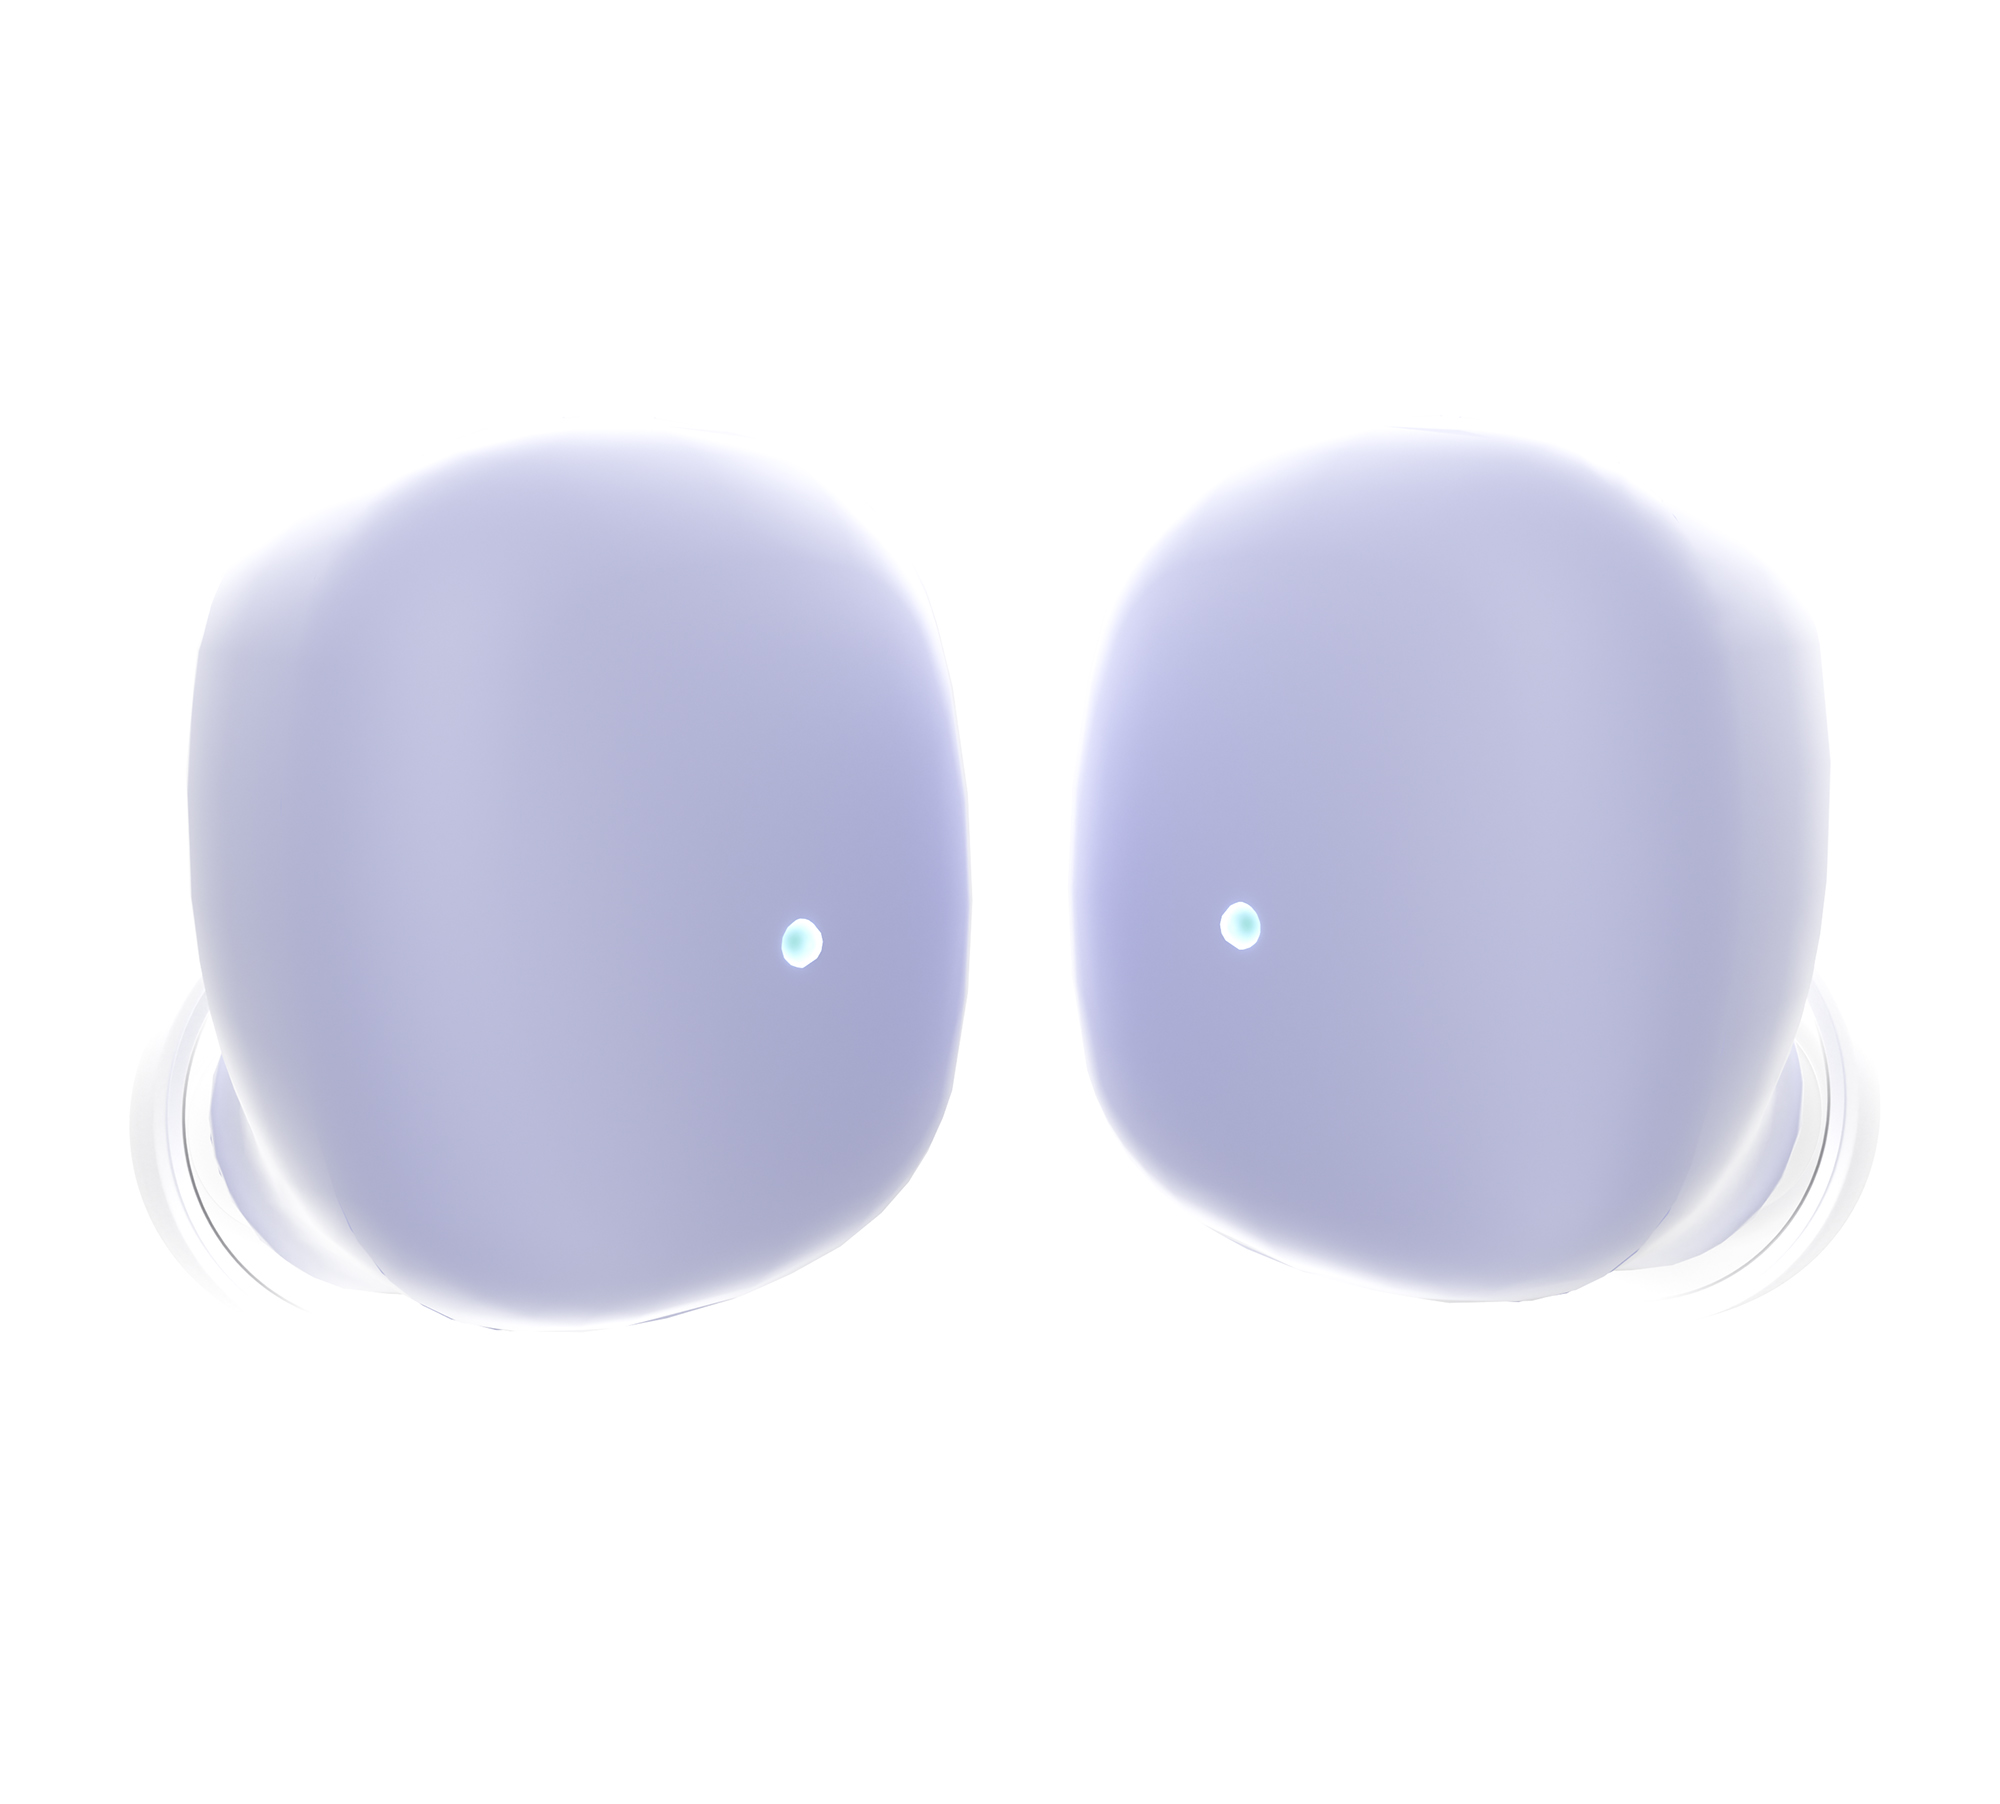 Навушники ERGO BS-530 Twins Nano 2 Violet